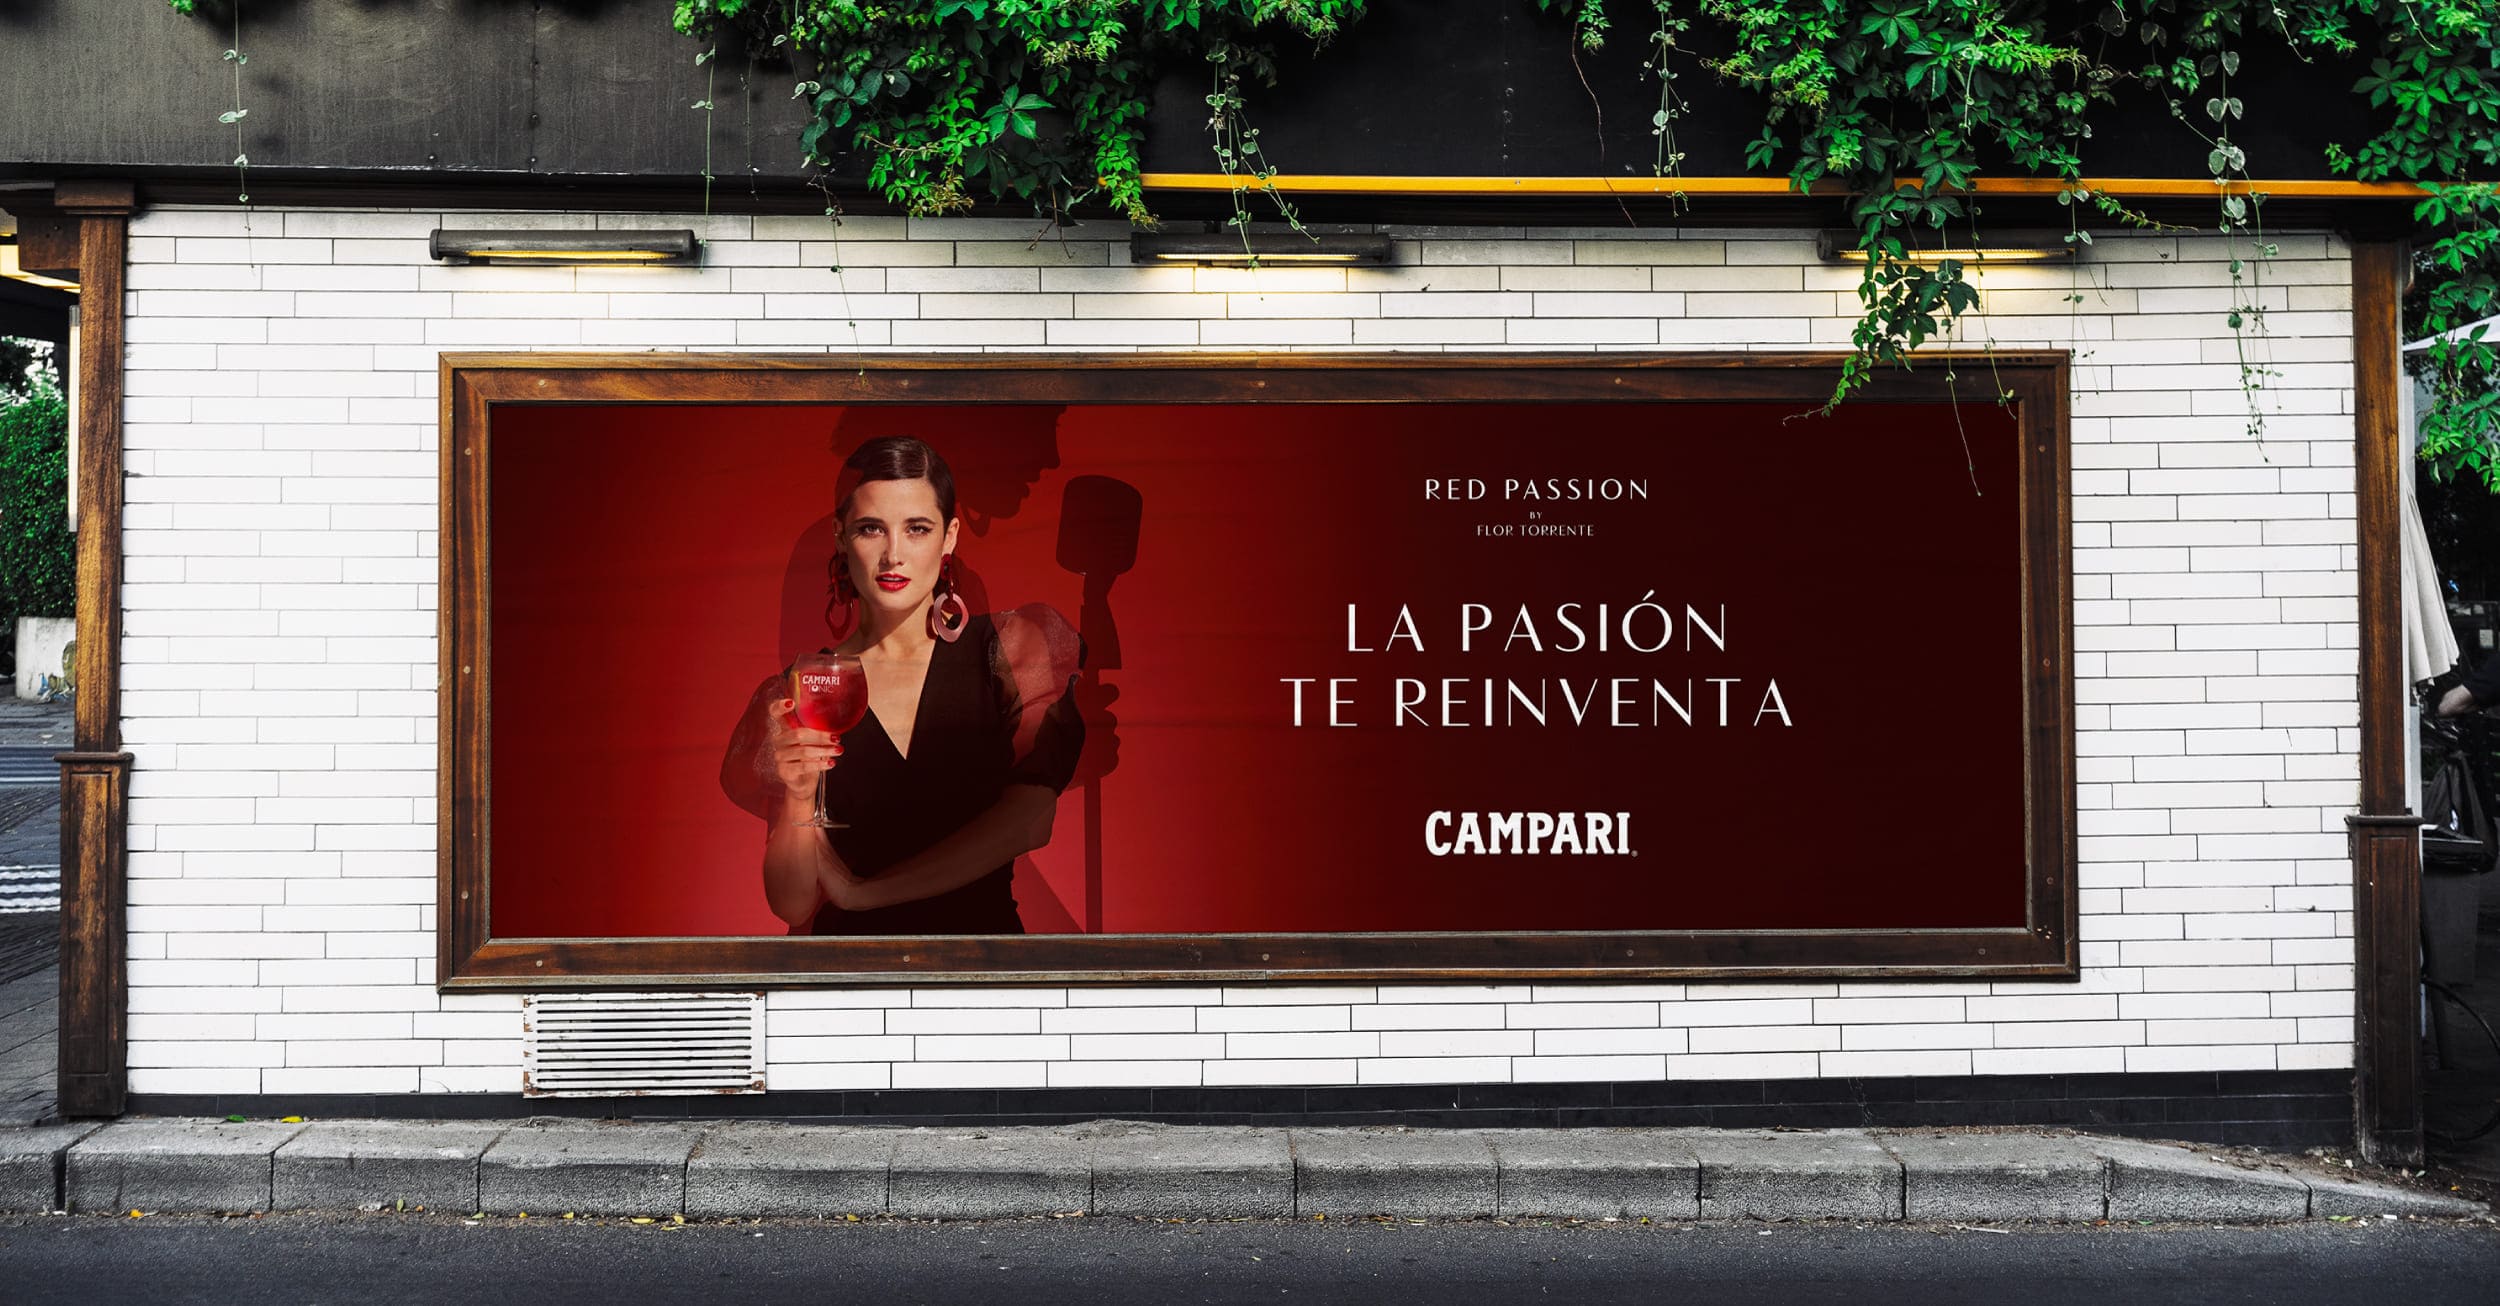 Poster de la campaña de Campari en vía pública: Red Passion by Flor Torrente. La pasión te reinventa.